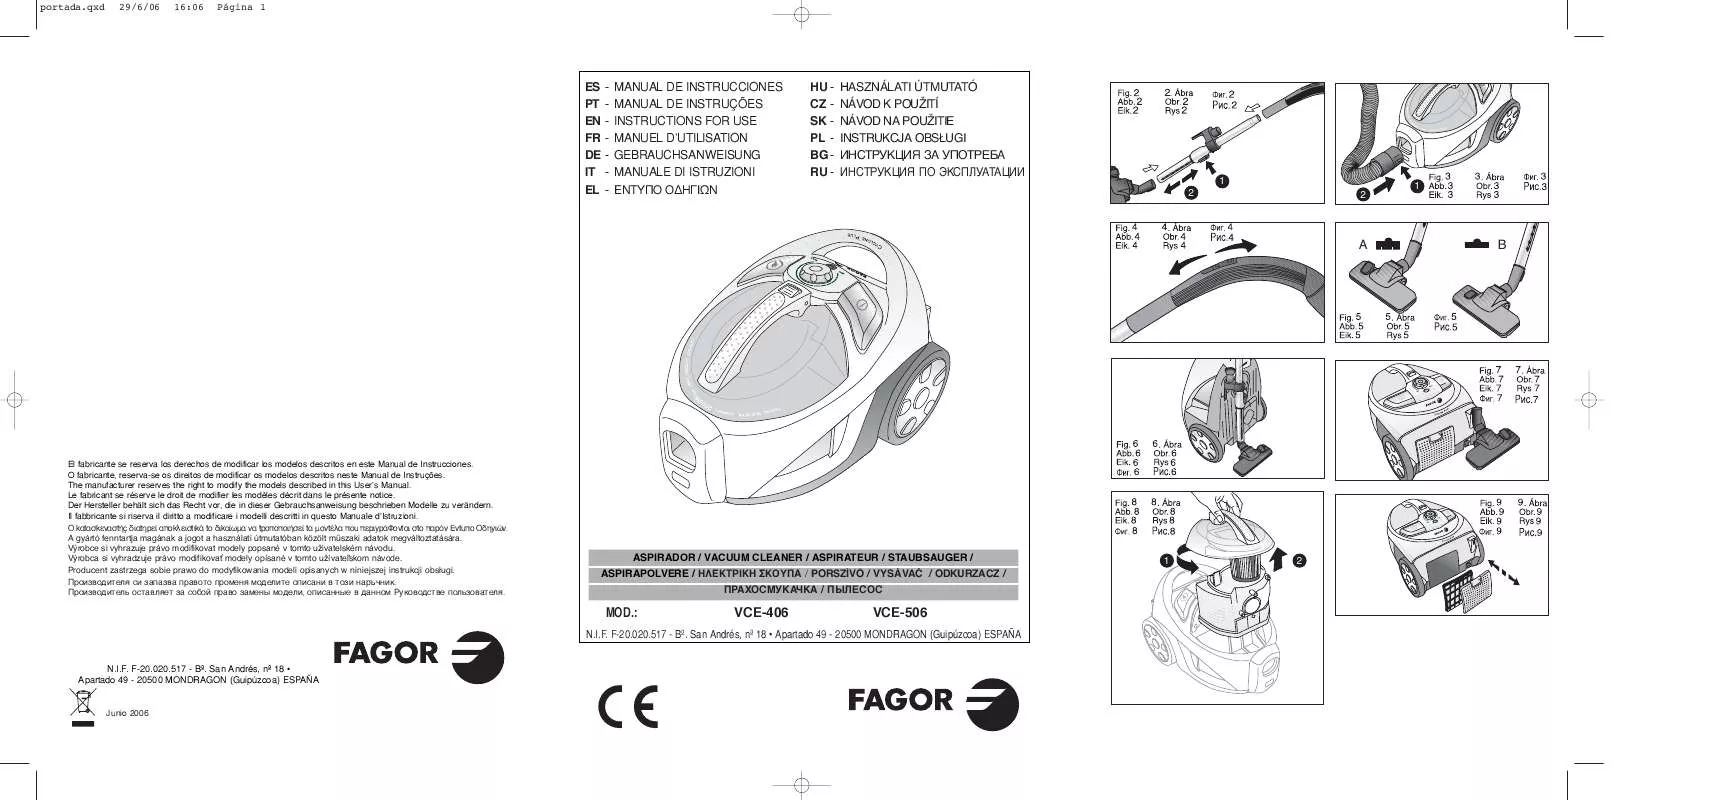 Mode d'emploi FAGOR VCE-506